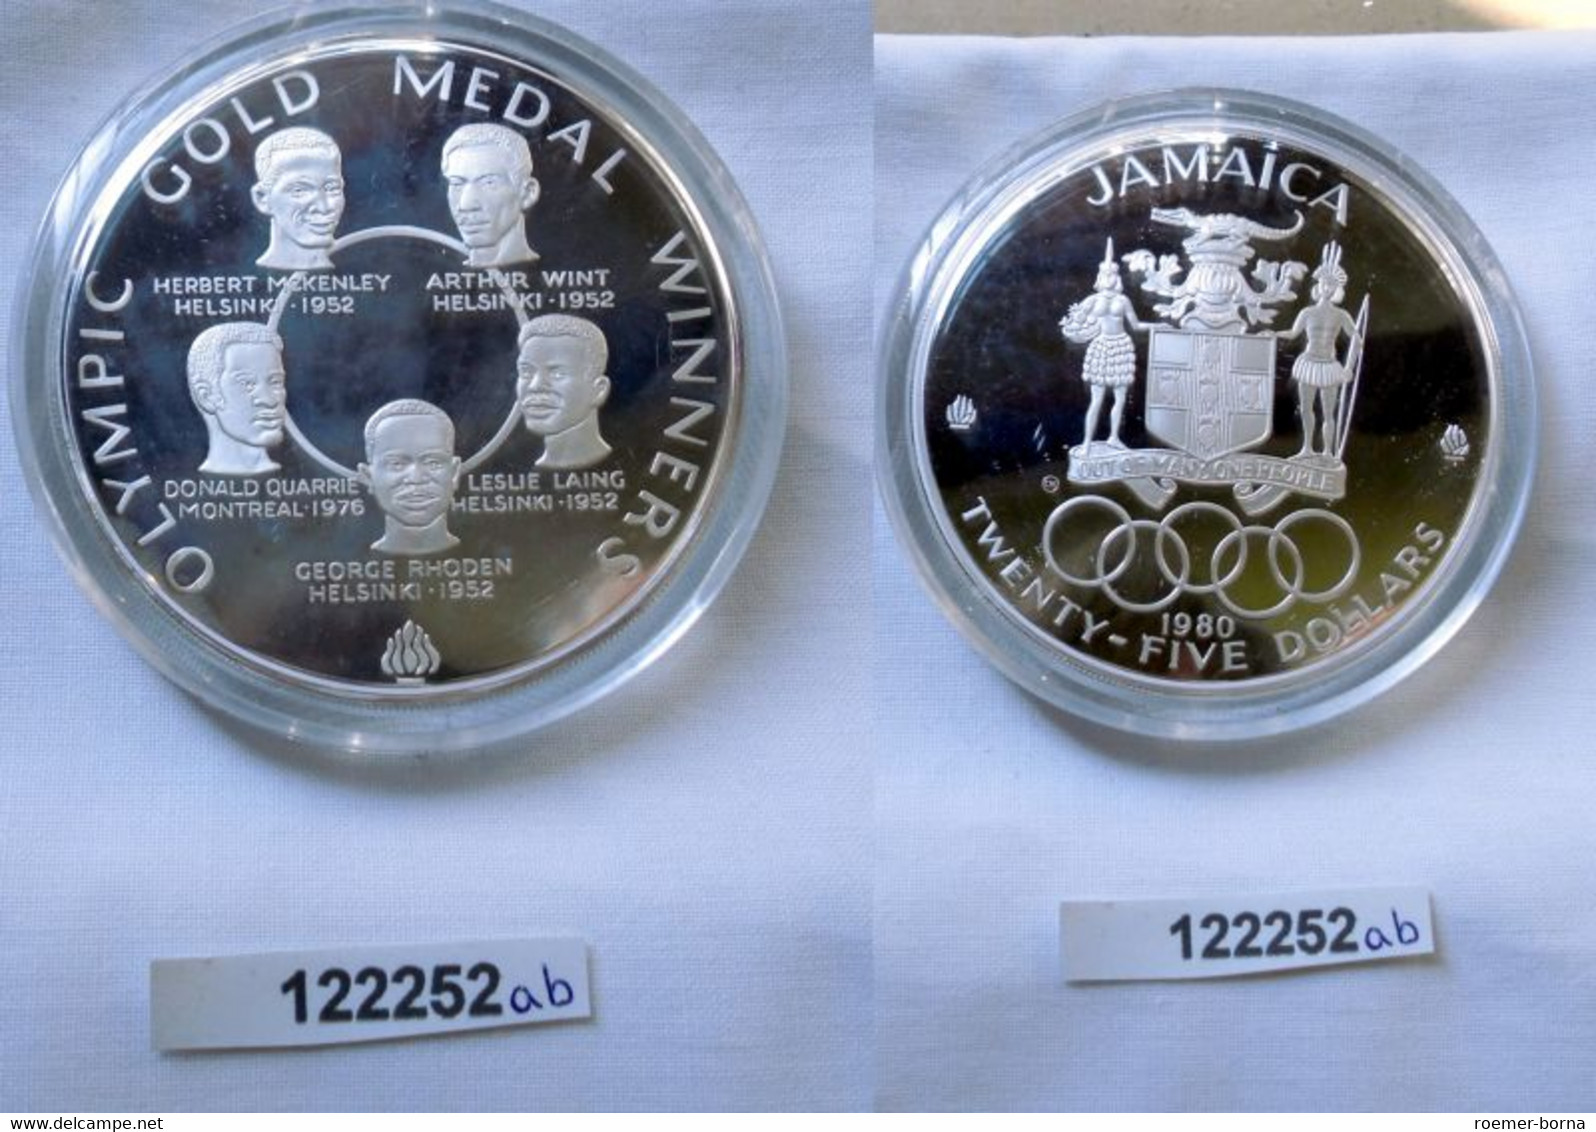 25 Dollar Silber Münze Jamaica Olympische Spiele 1980 OVP (122252) - Trinidad Y Tobago